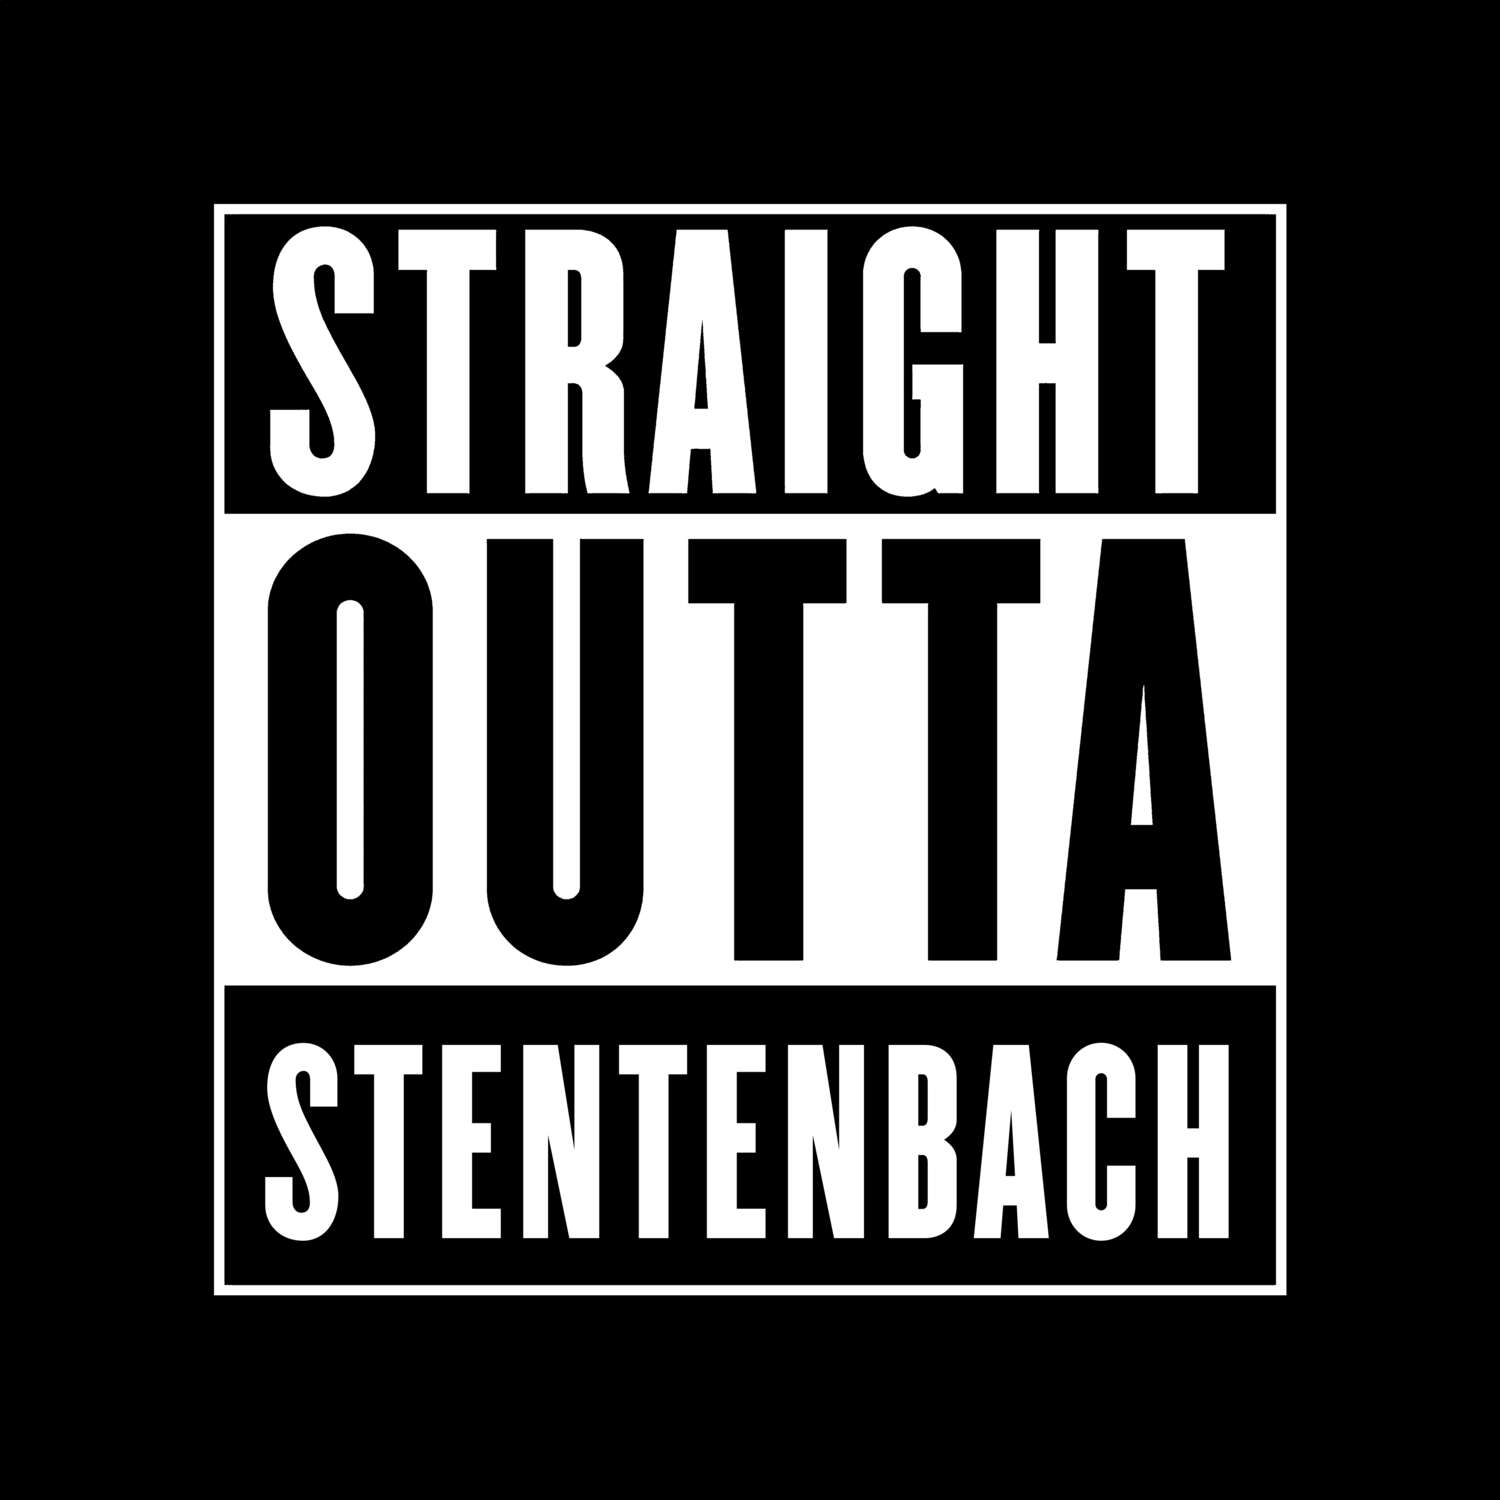 Stentenbach T-Shirt »Straight Outta«